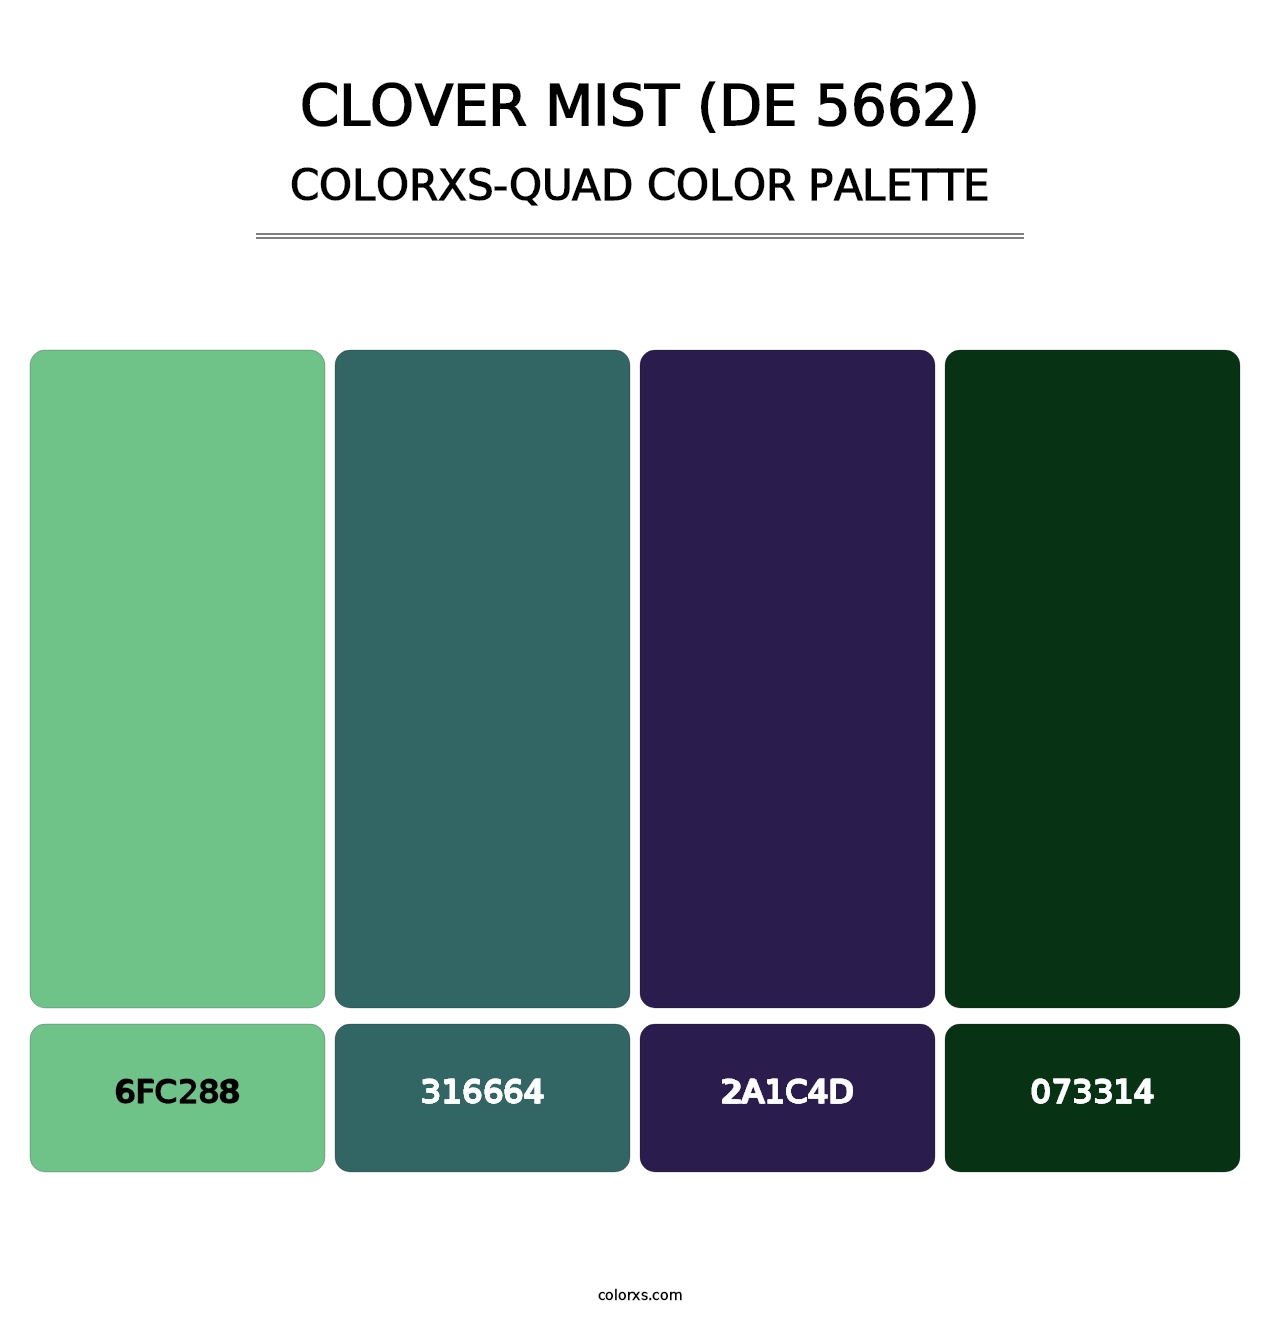 Clover Mist (DE 5662) - Colorxs Quad Palette